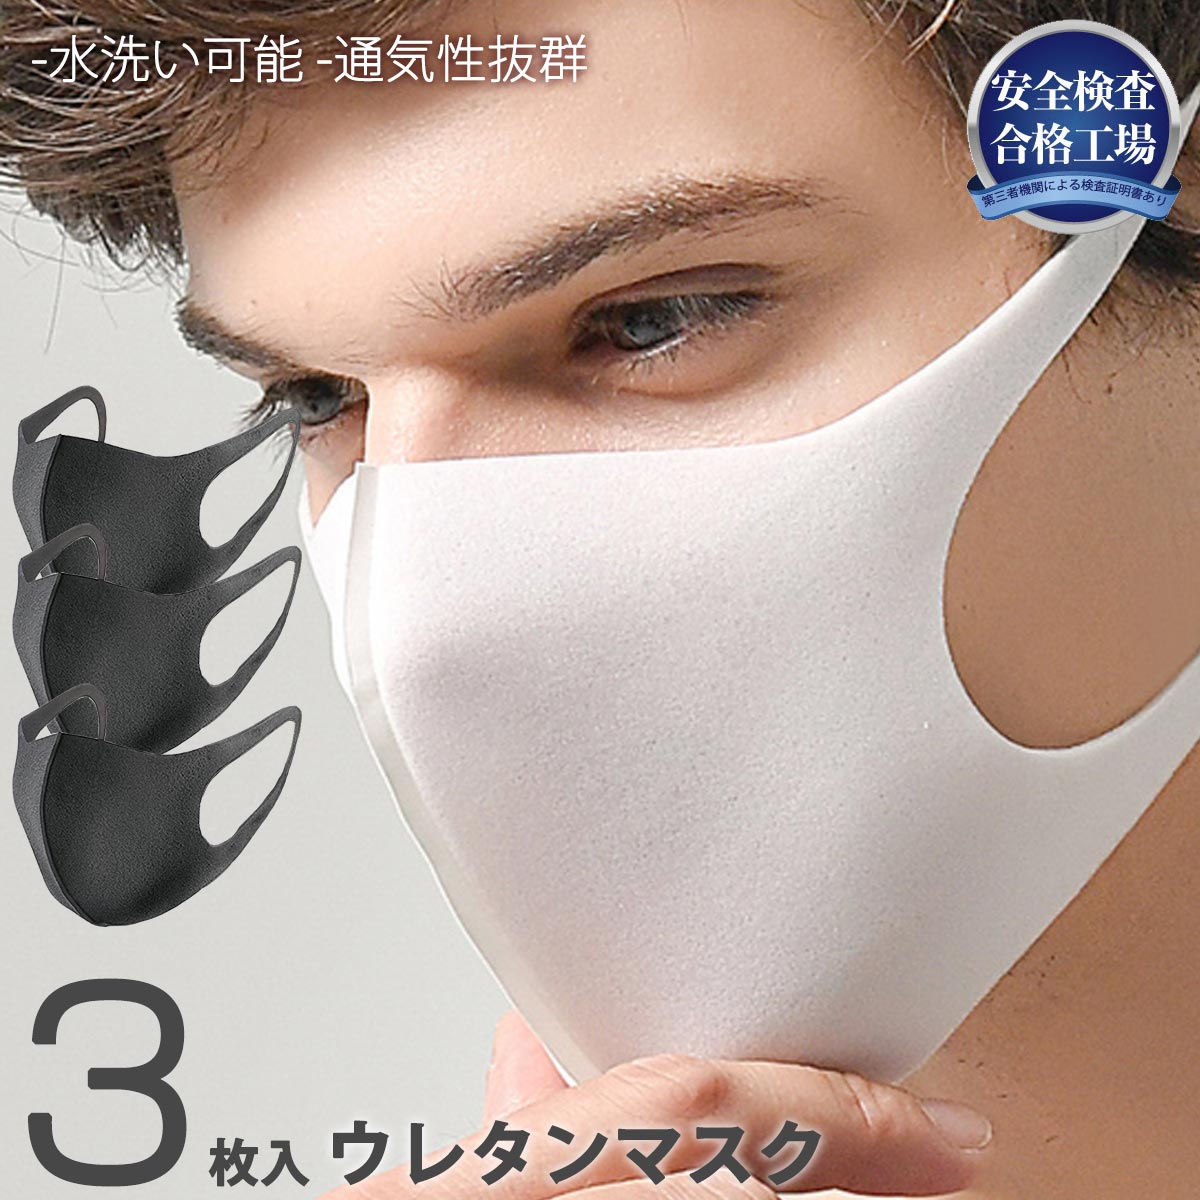 マスク 3枚セット 在庫あり 男女兼用 大人用 子供用 幼児用 白マスク 黒マスク ウレタンマスク ファッションマスク おしゃれマスク